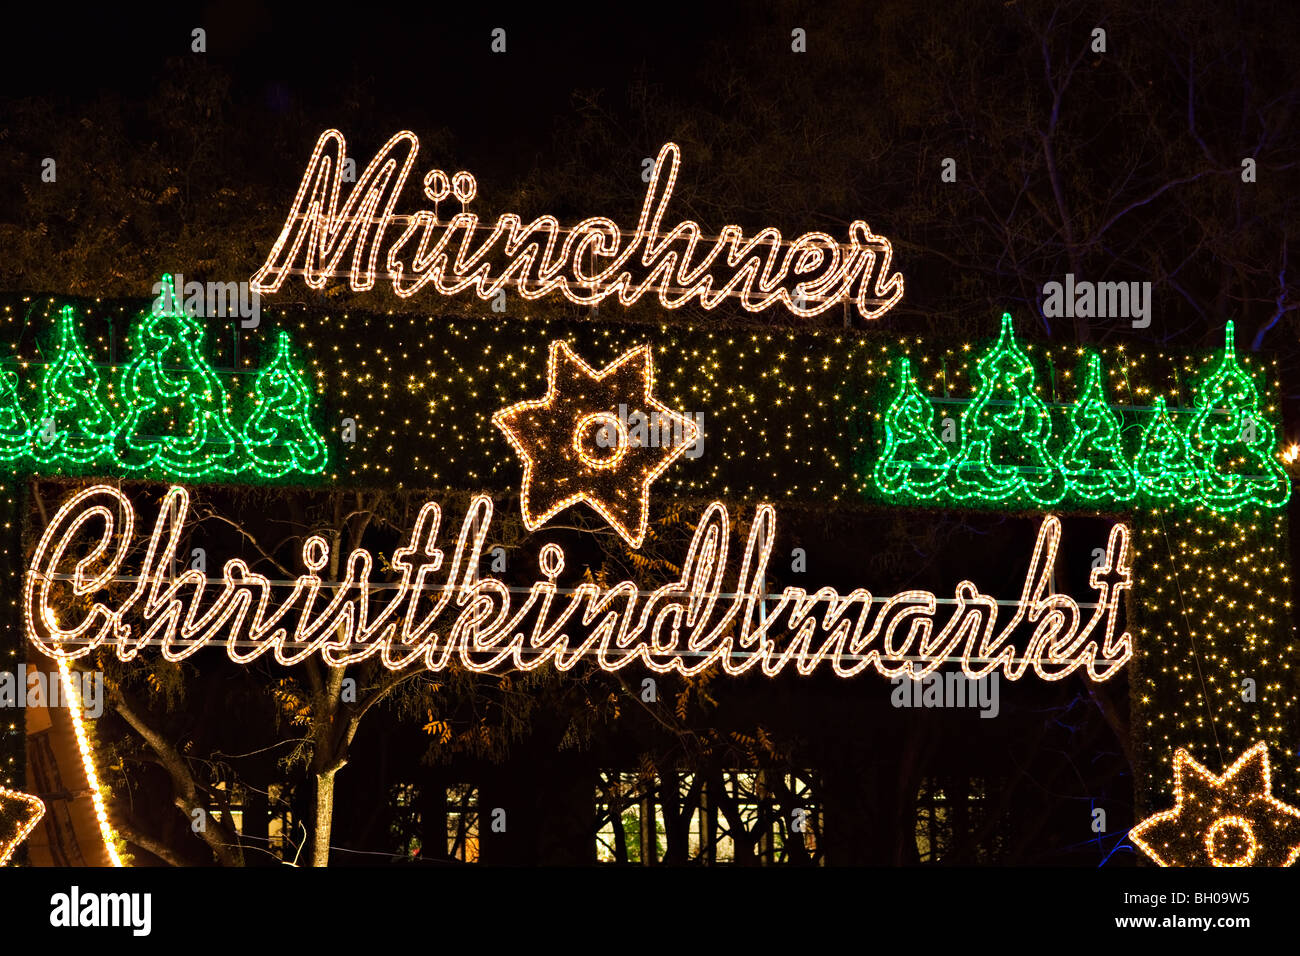 Signo luminoso iluminado por la München Christkindlmarkt (Mercados de Navidad) en la ciudad de München (Munich), Baviera, Alemania, Foto de stock